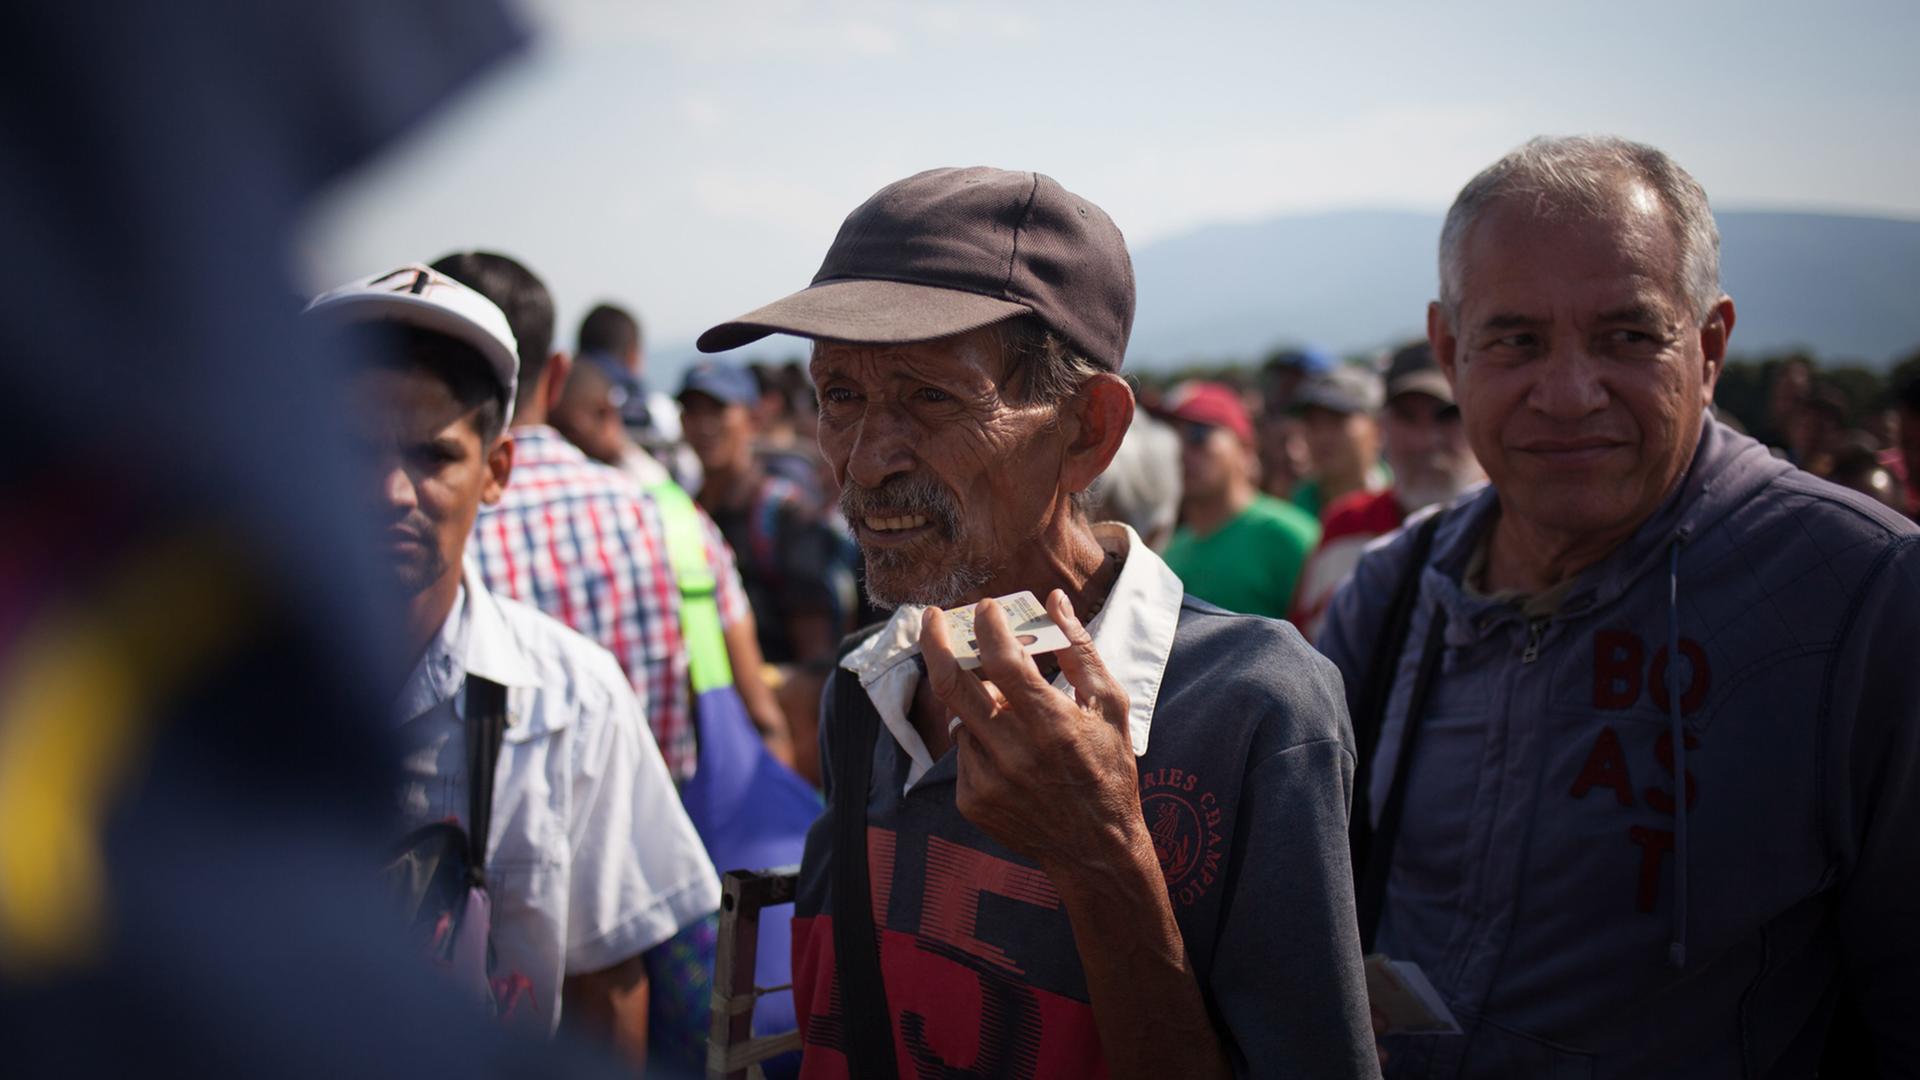 Zigtausende Venezolaner versuchen über die Grenze nach Kolumbien zu fliehen - hier über die Brücke Simón Bolívar, aufgenommen im Juni 2018